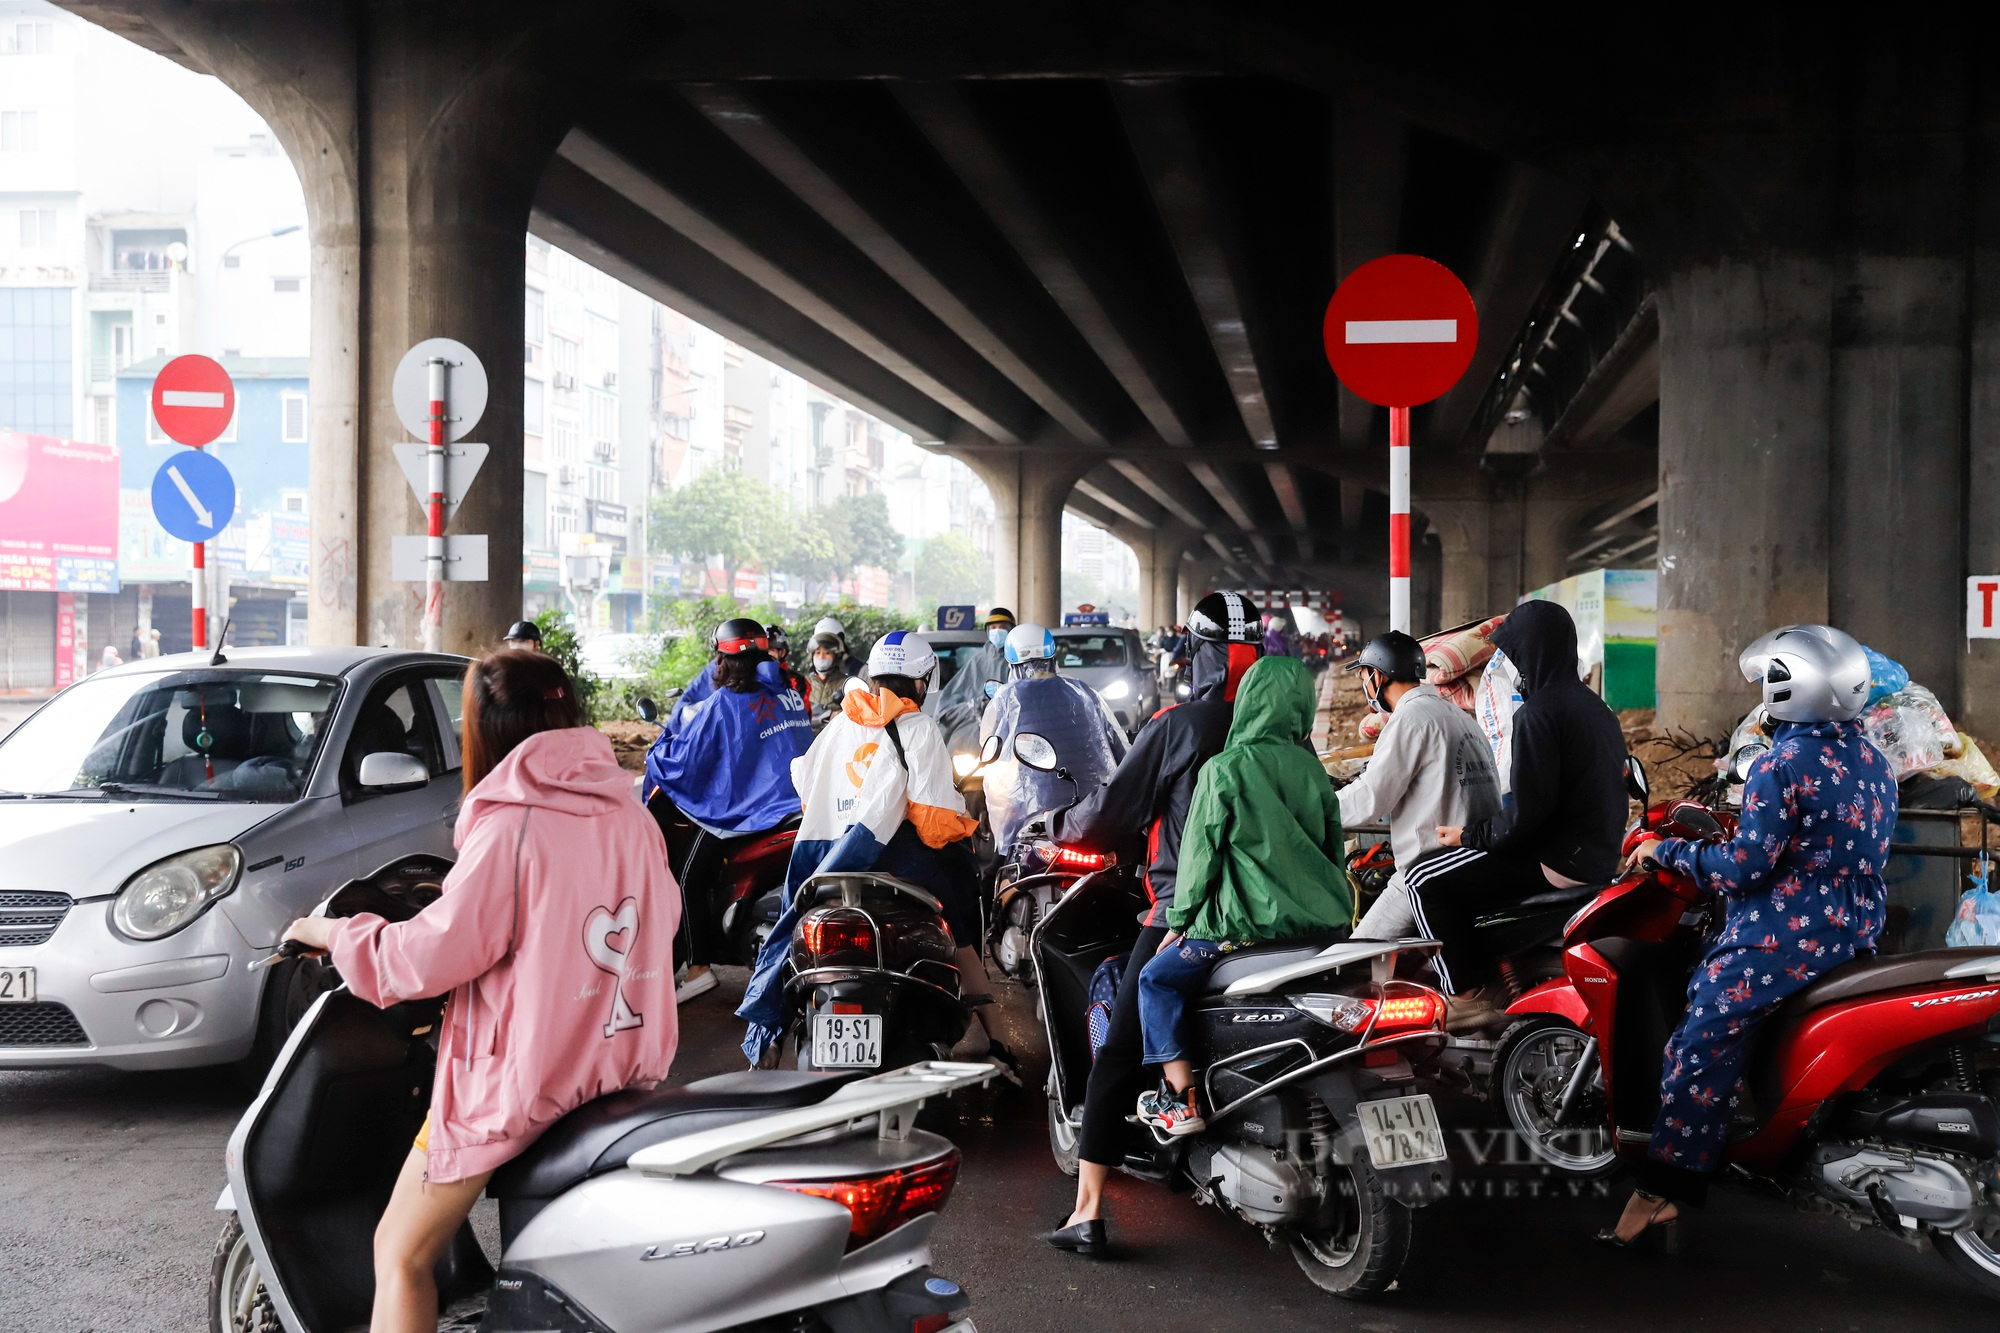 Hàng đoàn xe máy ùn ùn đi ngược chiều tại đoạn đường mới mở tại Hà Nội - Ảnh 7.